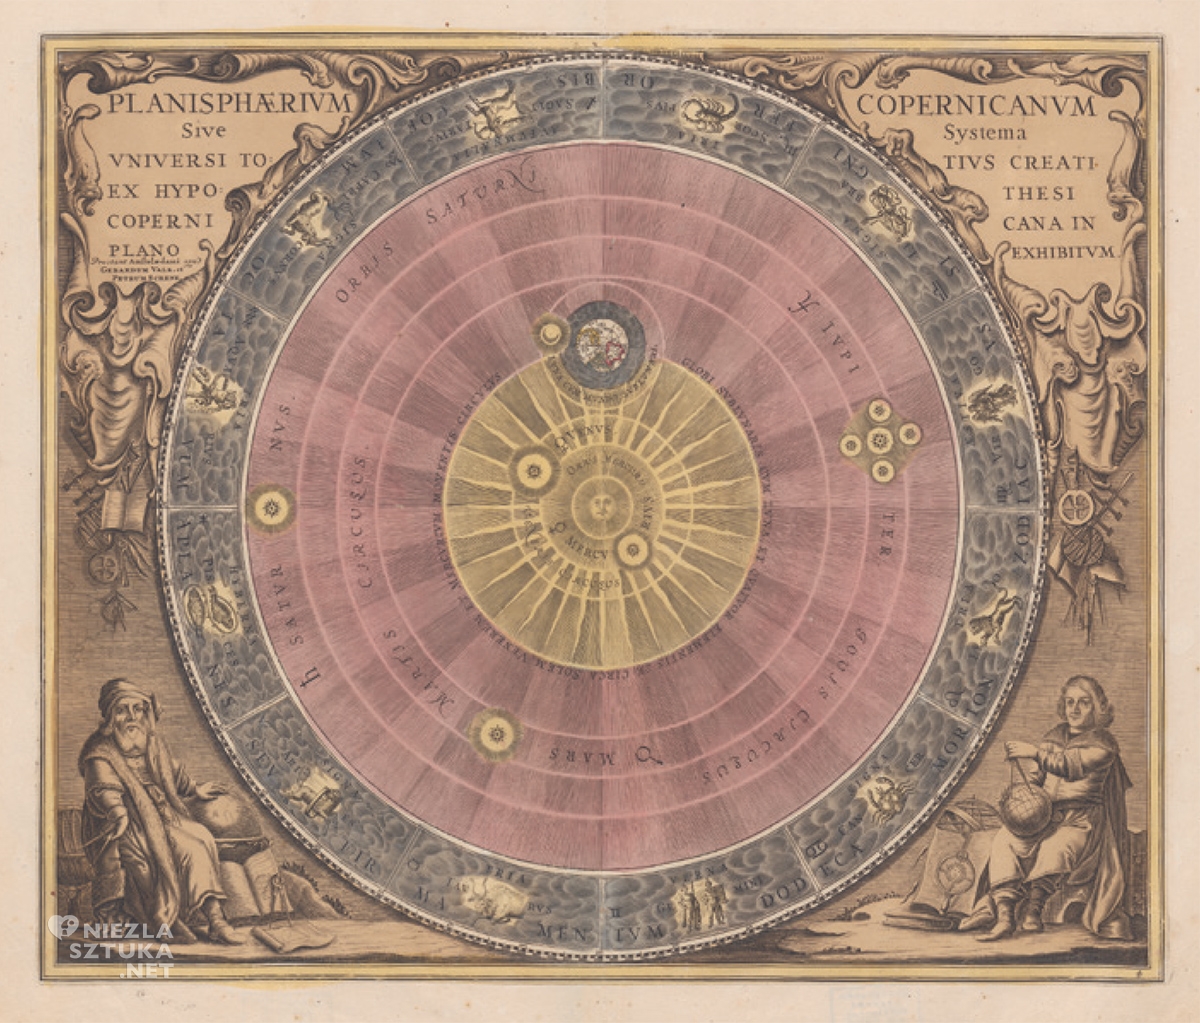 Mikołaj Kopernik, Andreas Cellarius, Heliocentryczny układ świata wg Mikołaja Kopernika, Harmonia Macrocosmica, niezła sztuka